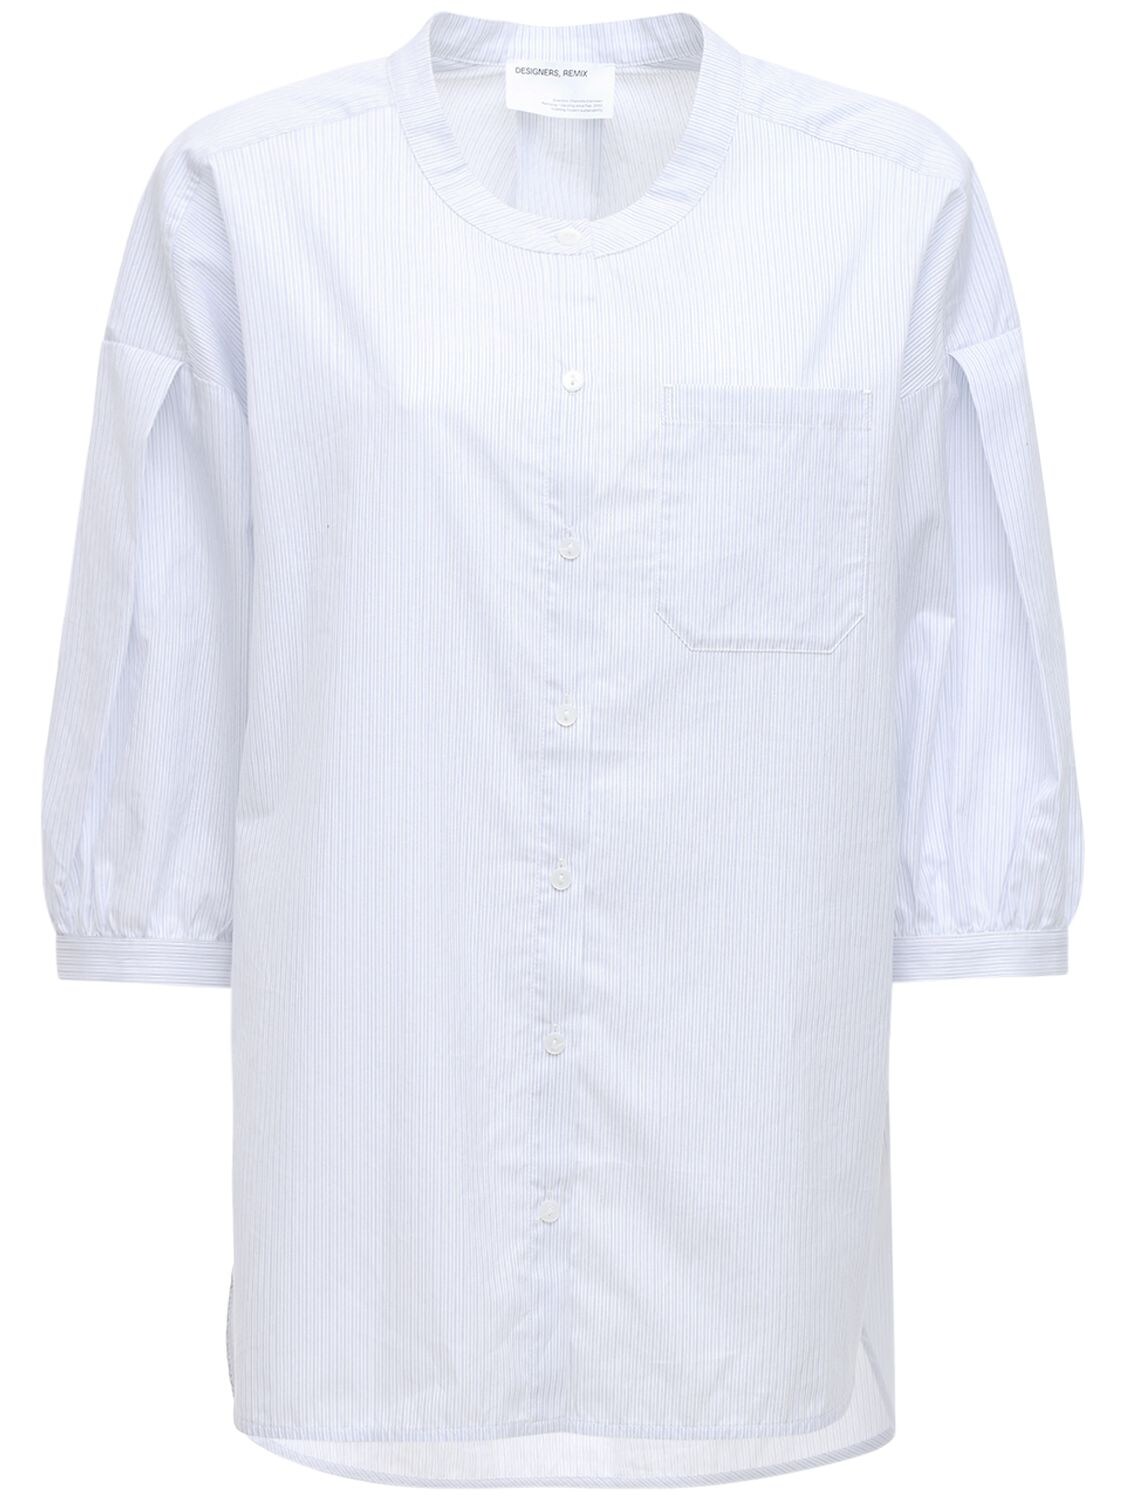 Umbria Oversized Organic Cotton Shirt